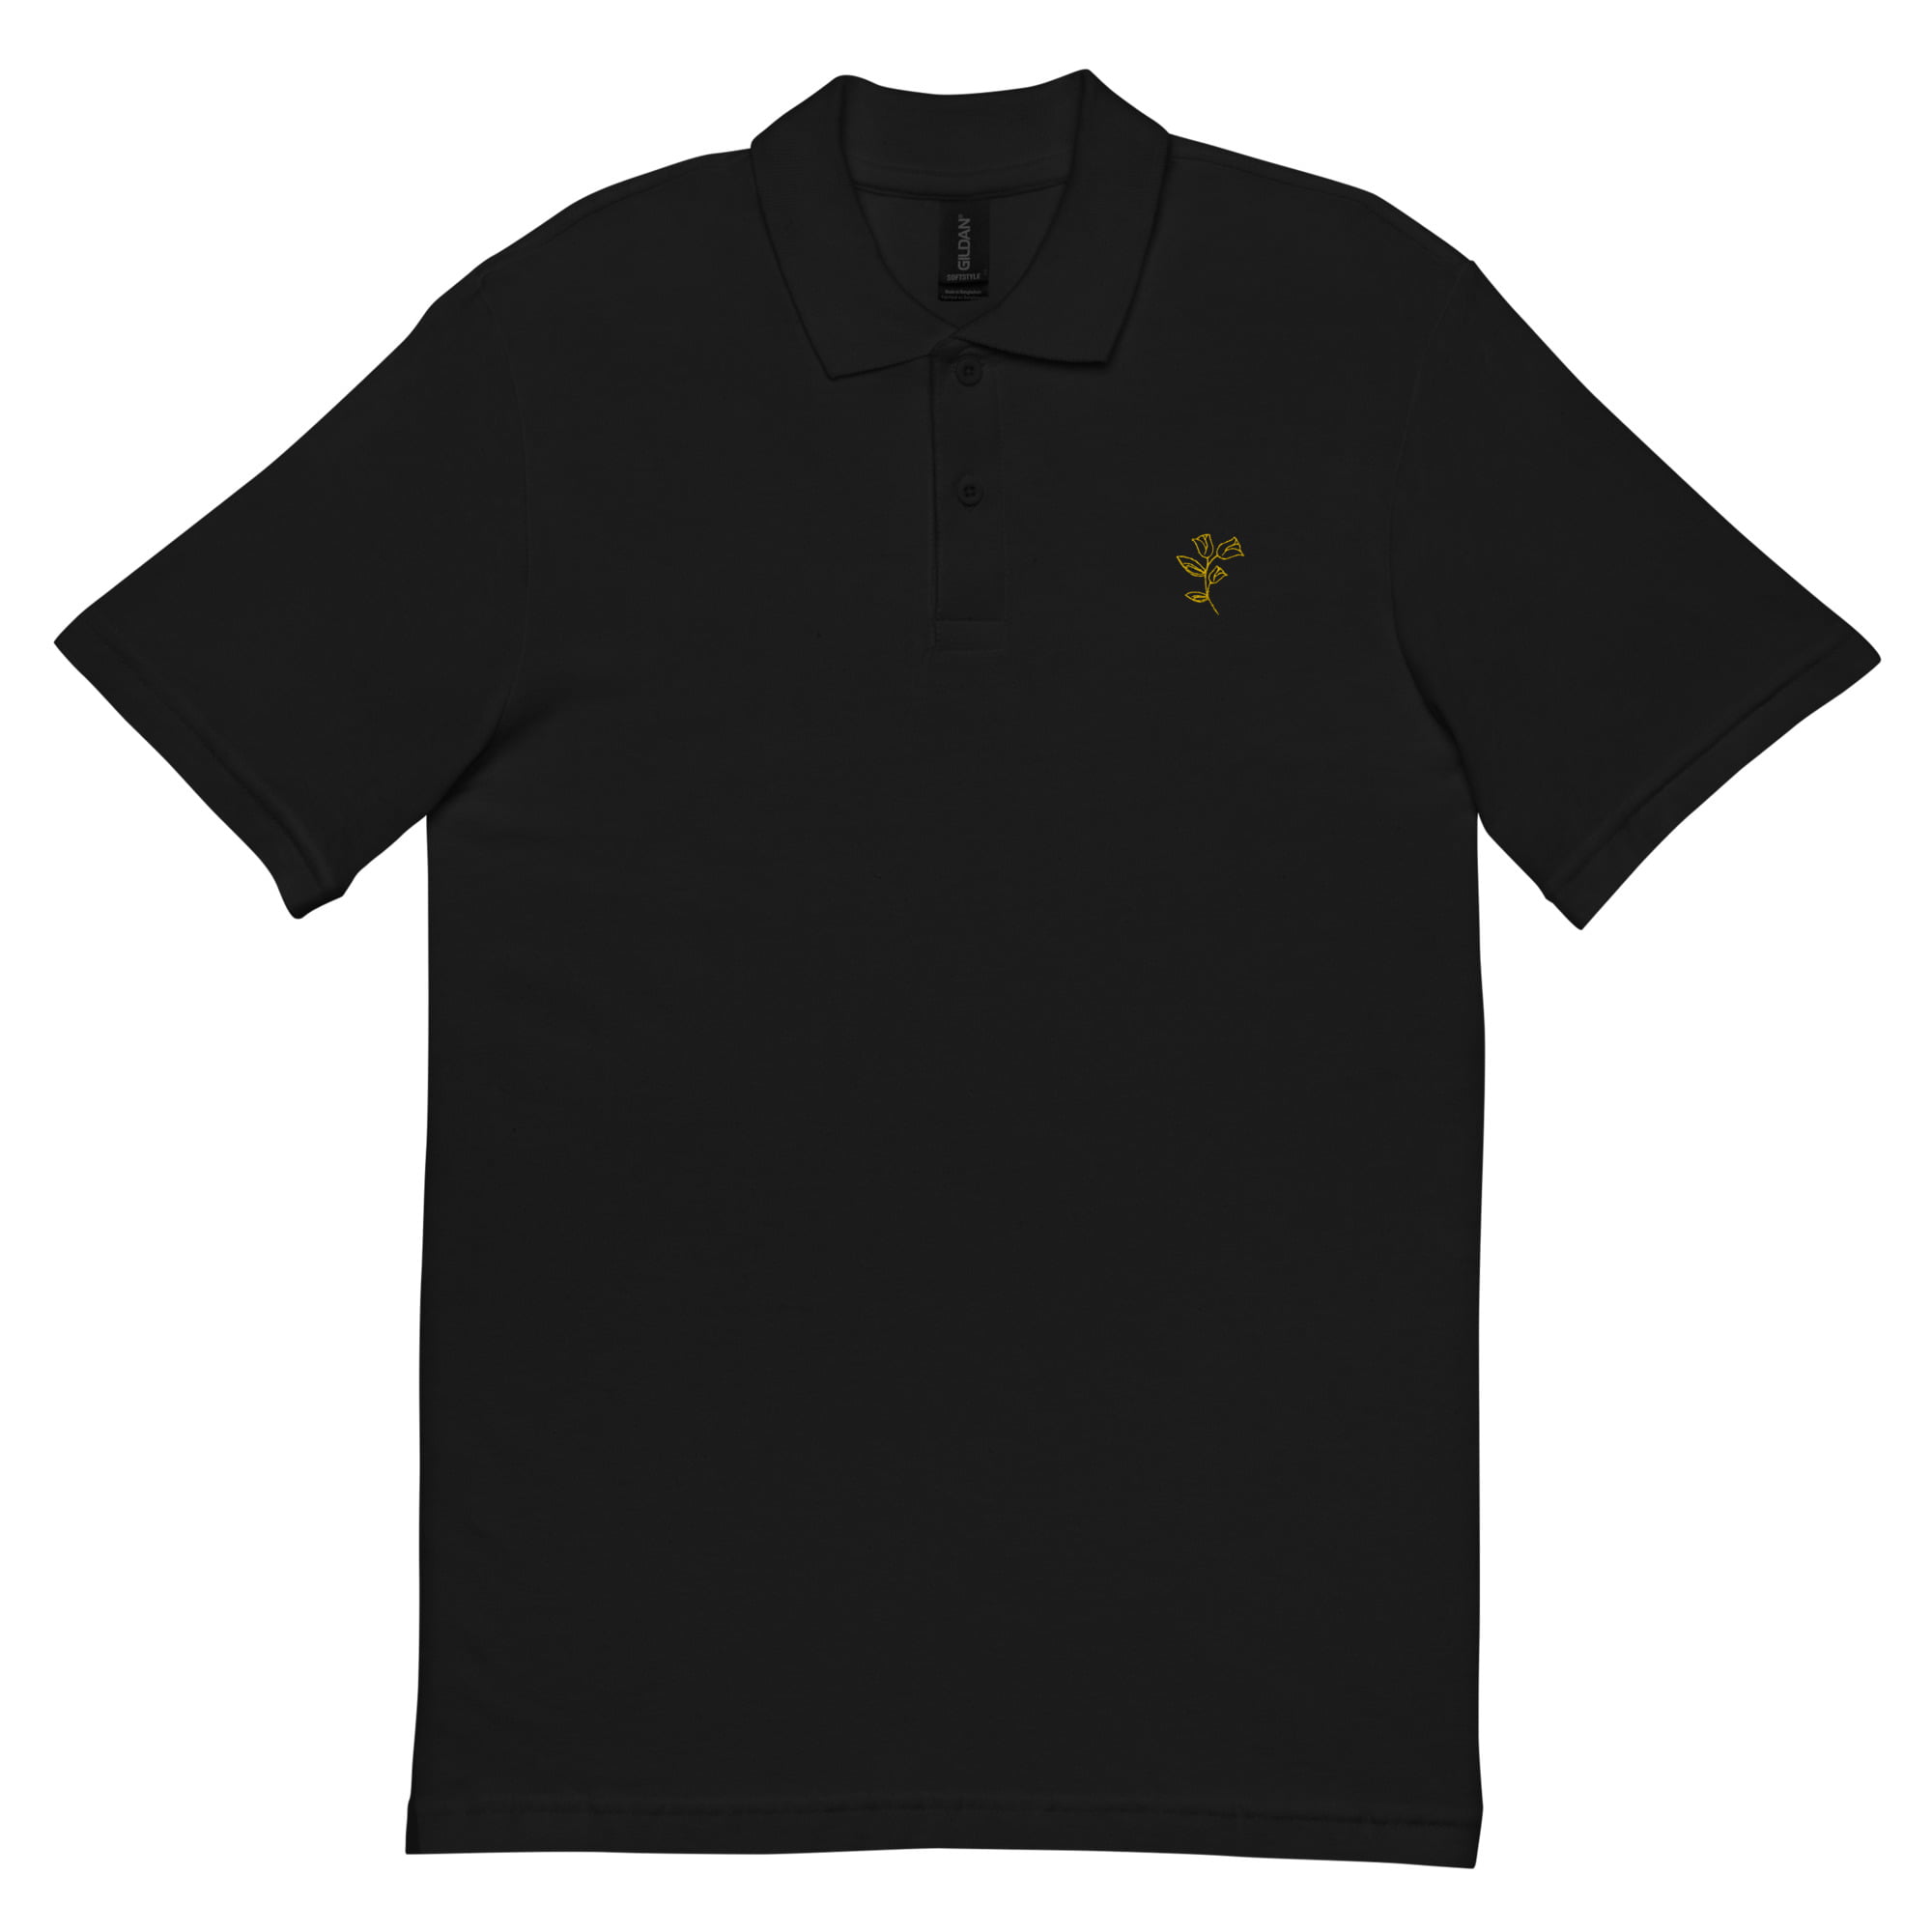 unisex pique polo shirt black front 6475c6f81ec11